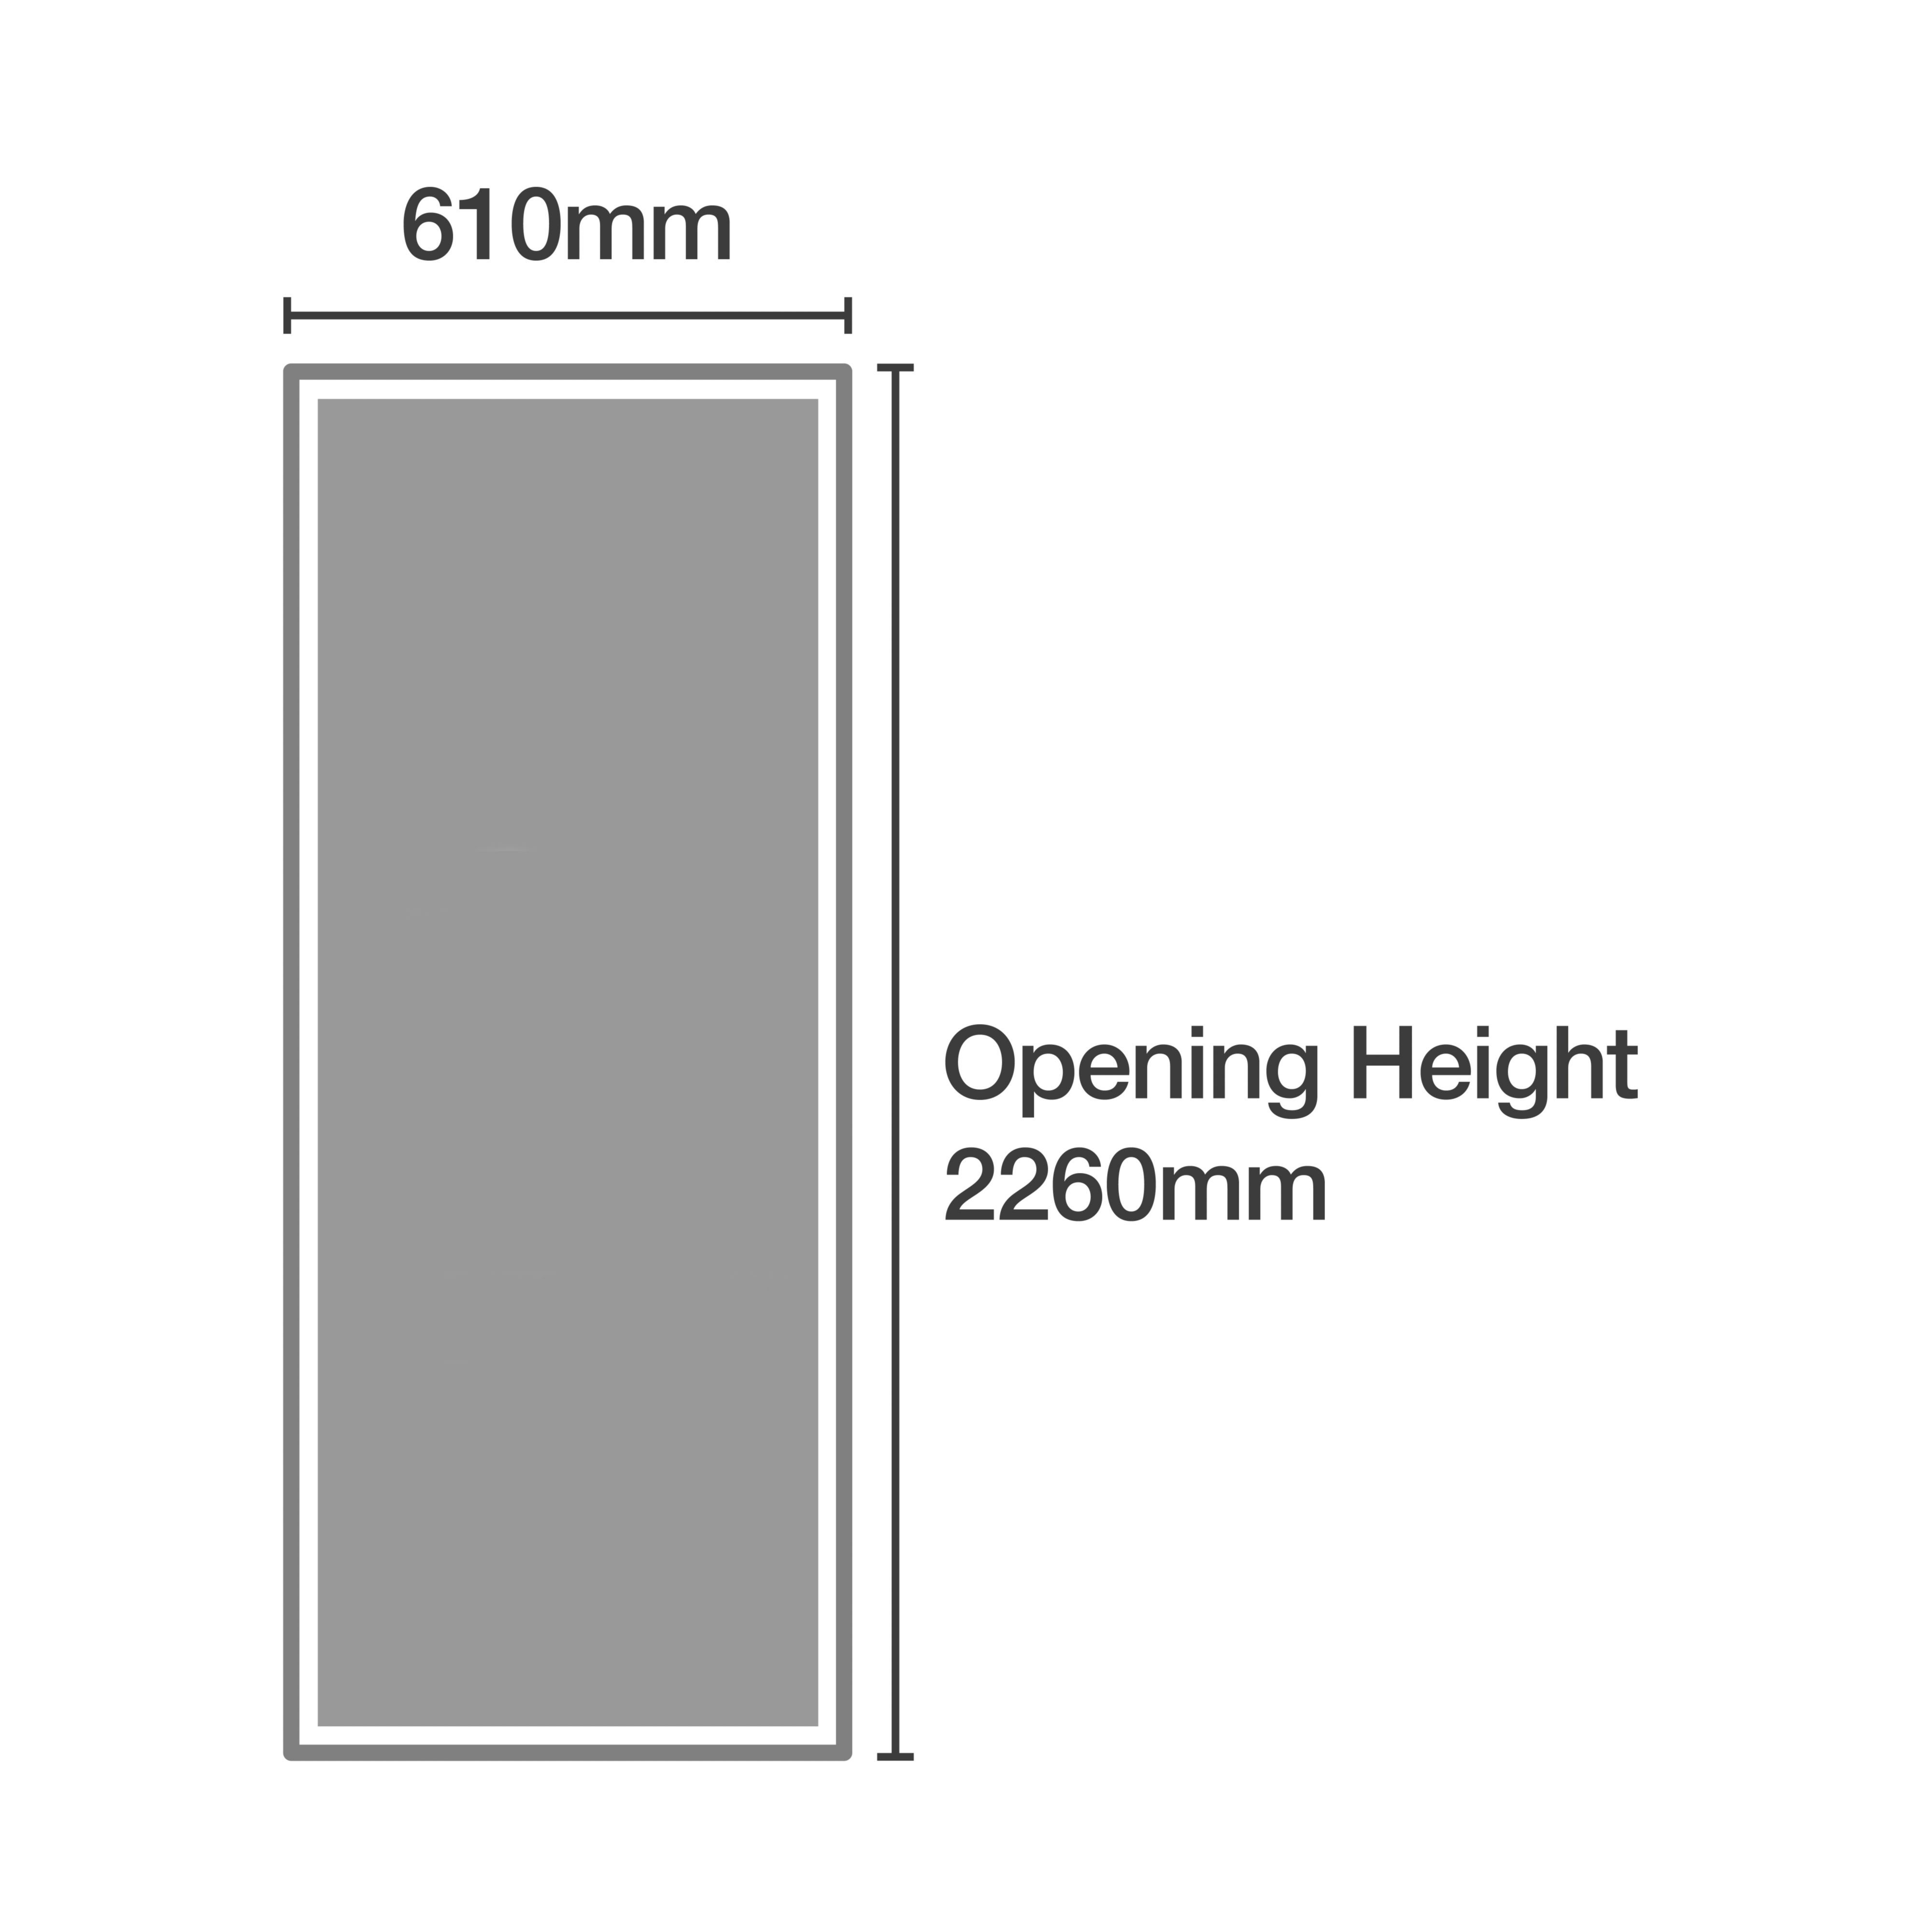 Panel Shaker Natural oak effect 2 door Sliding Wardrobe Door kit (H)2223mm (W)610mm